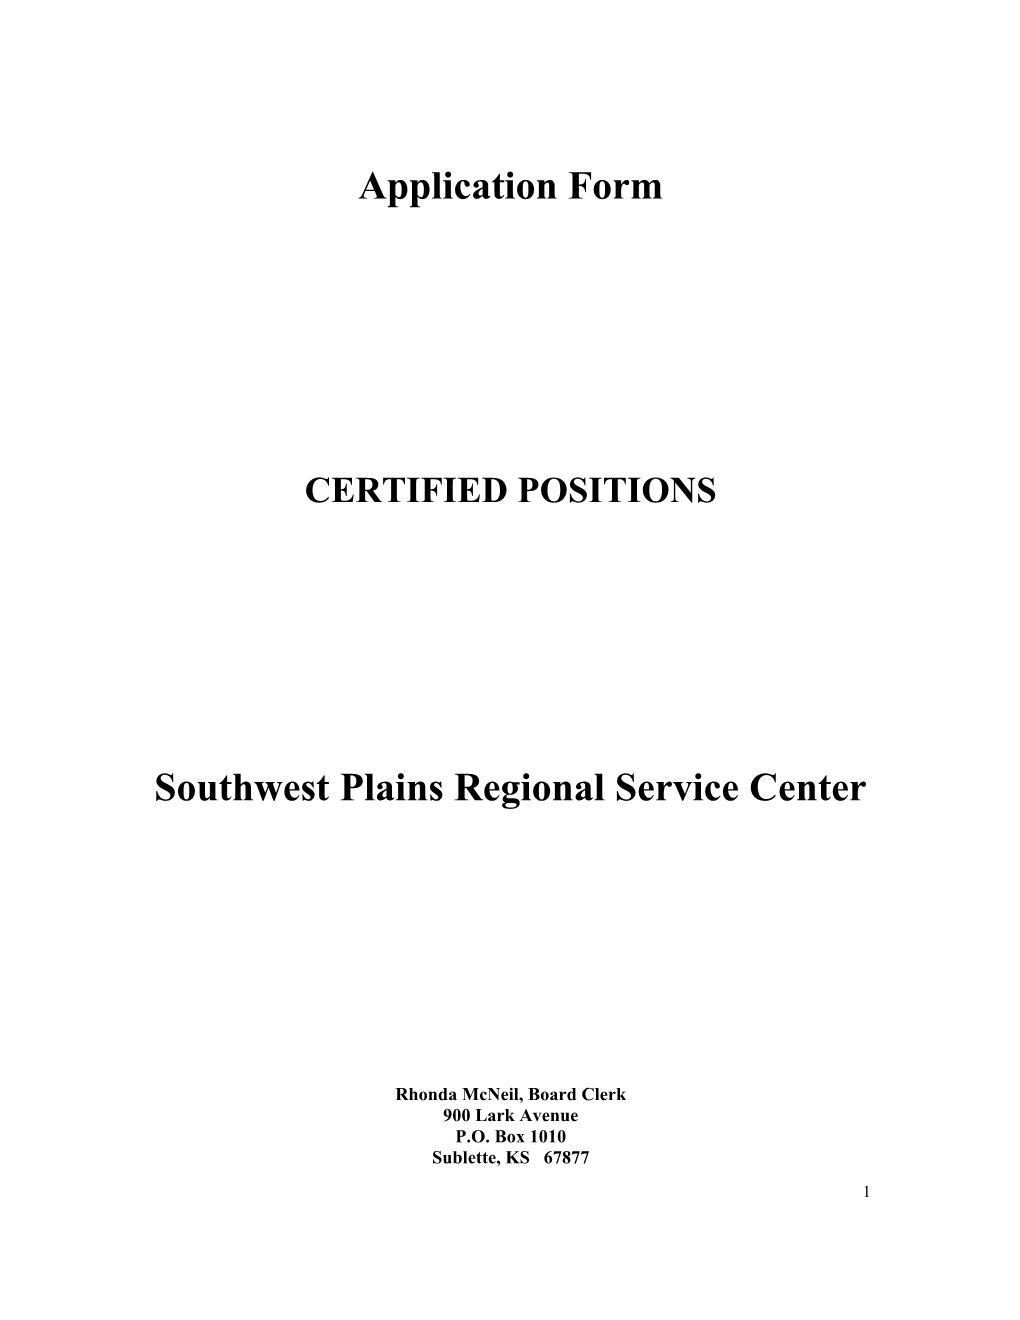 Southwest Plains Regional Service Center